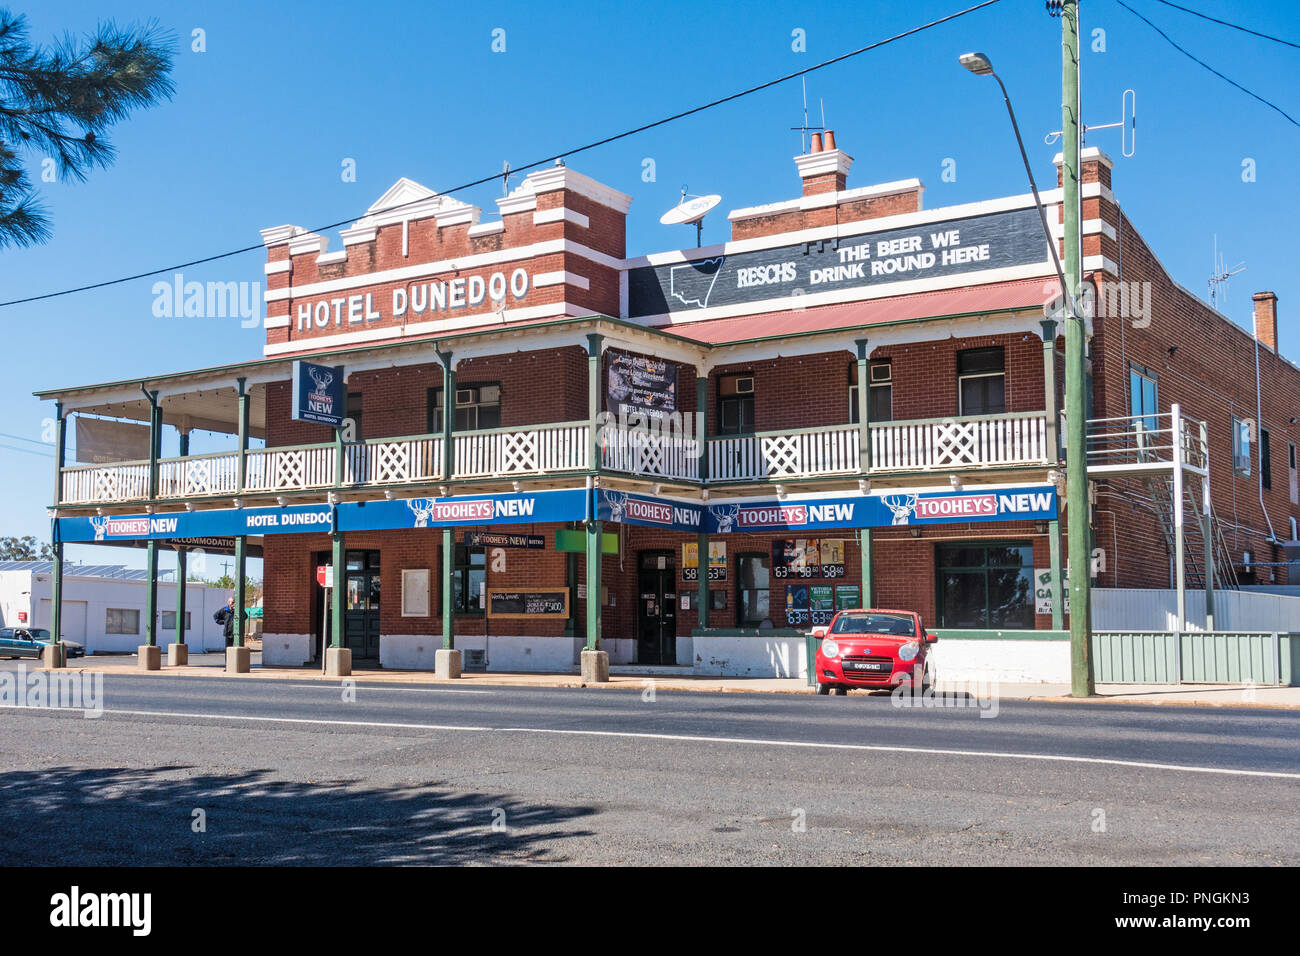 Hotel dunedoo, NSW, Australien. Stockfoto